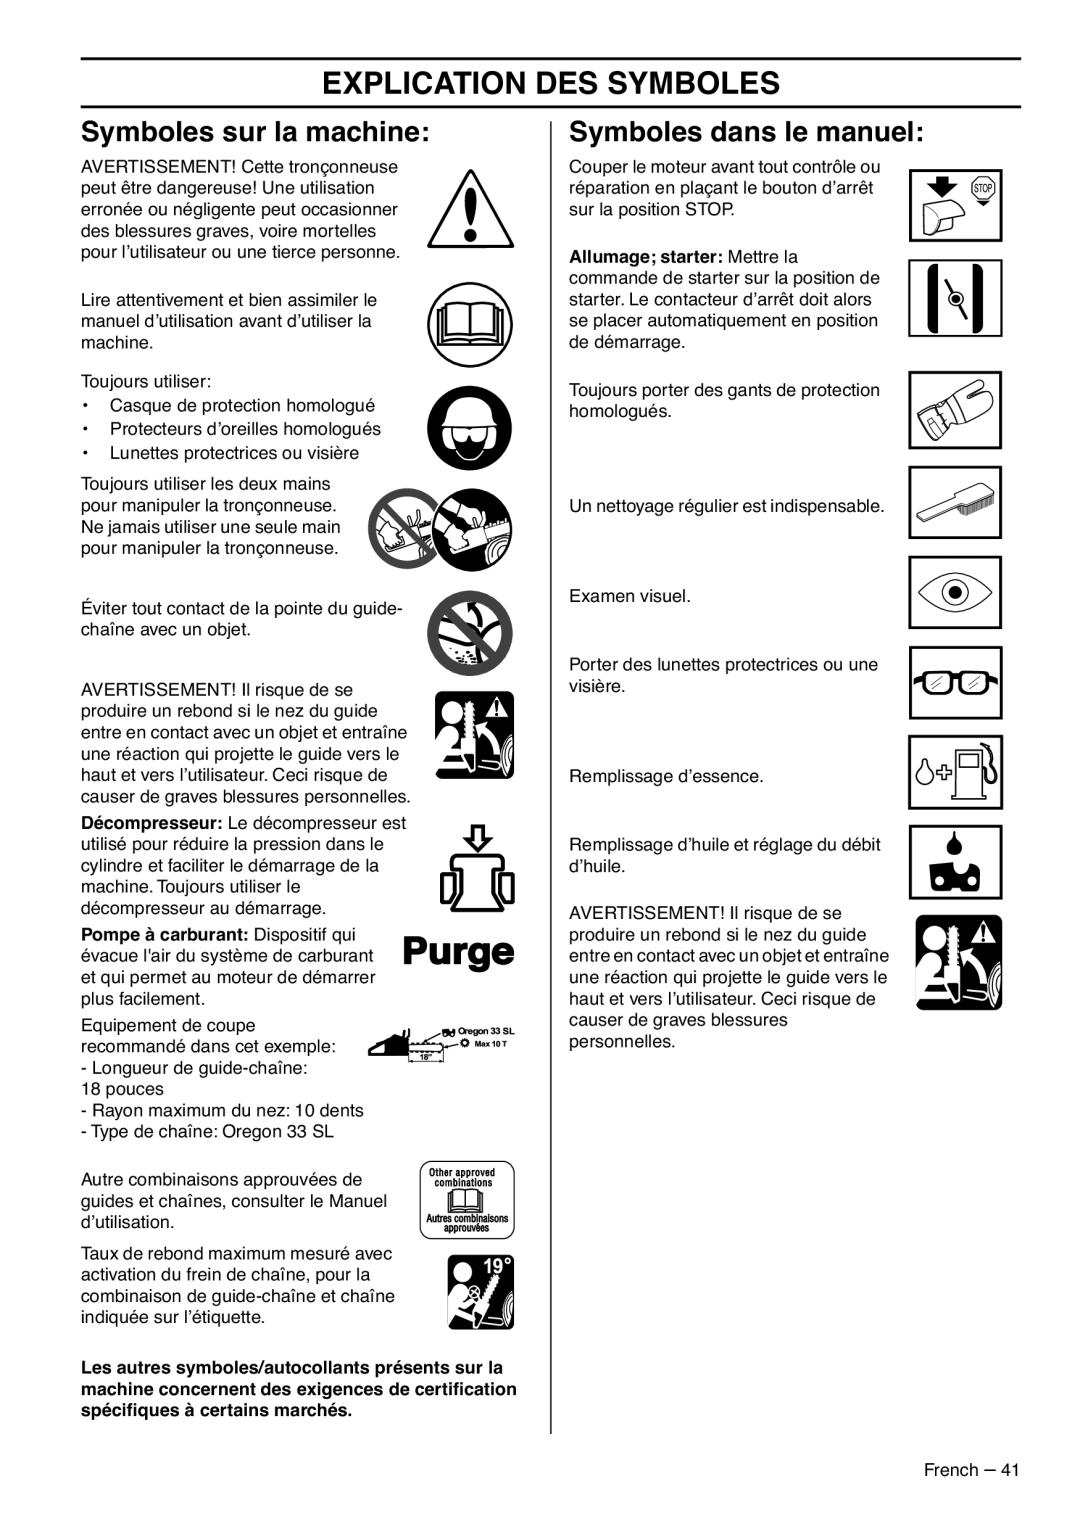 RedMax G5300 manual Explication Des Symboles, Symboles sur la machine, Symboles dans le manuel 